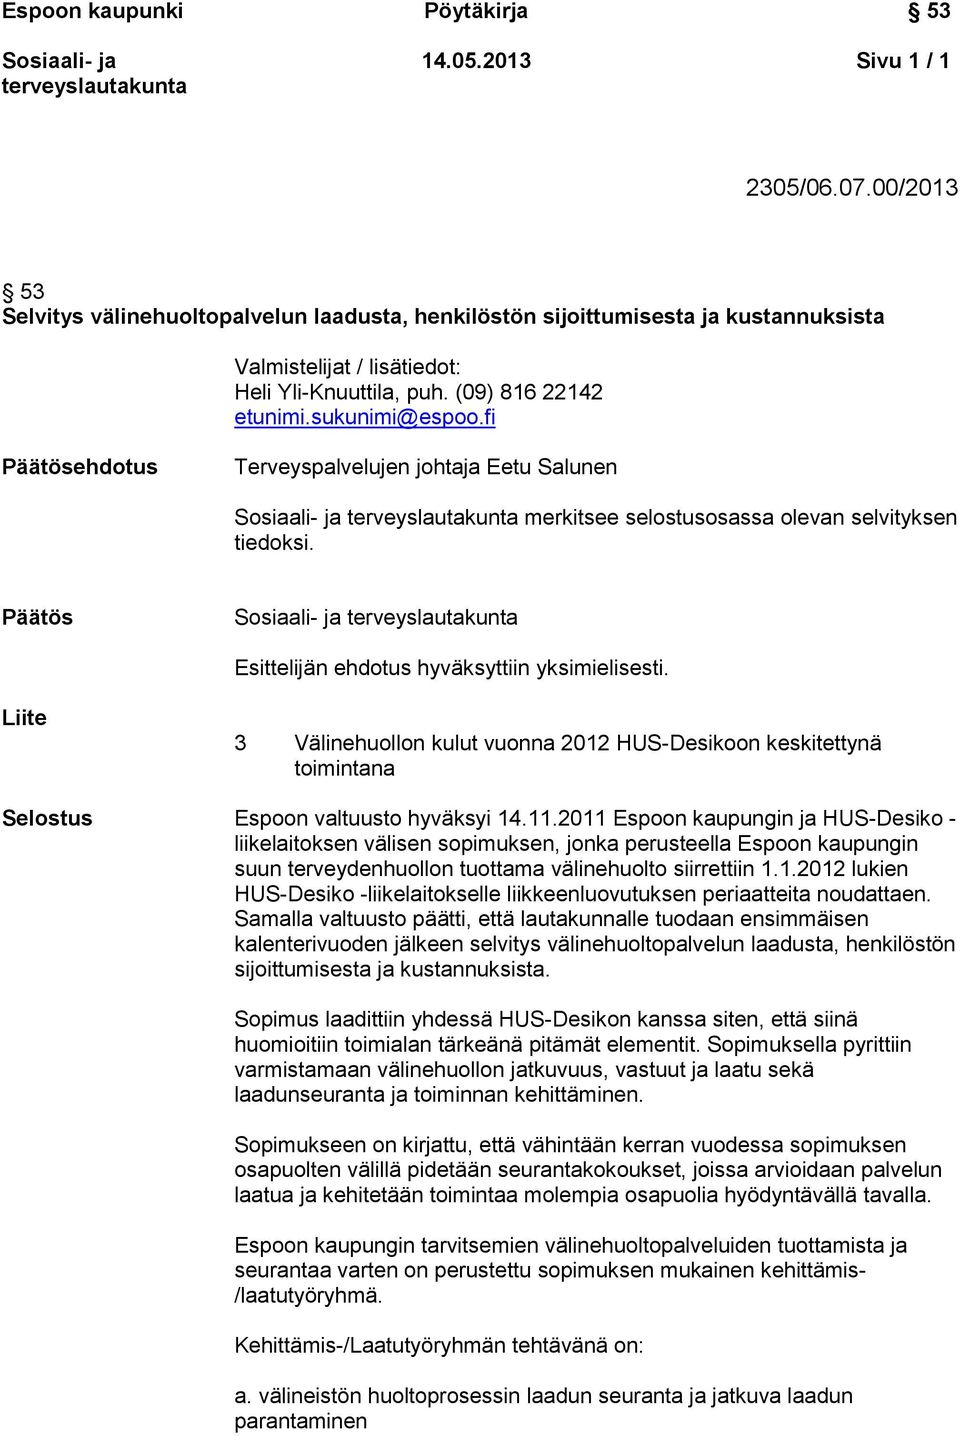 Päätös Esittelijän ehdotus hyväksyttiin yksimielisesti. Liite 3 Välinehuollon kulut vuonna 2012 HUS-Desikoon keskitettynä toimintana Selostus Espoon valtuusto hyväksyi 14.11.